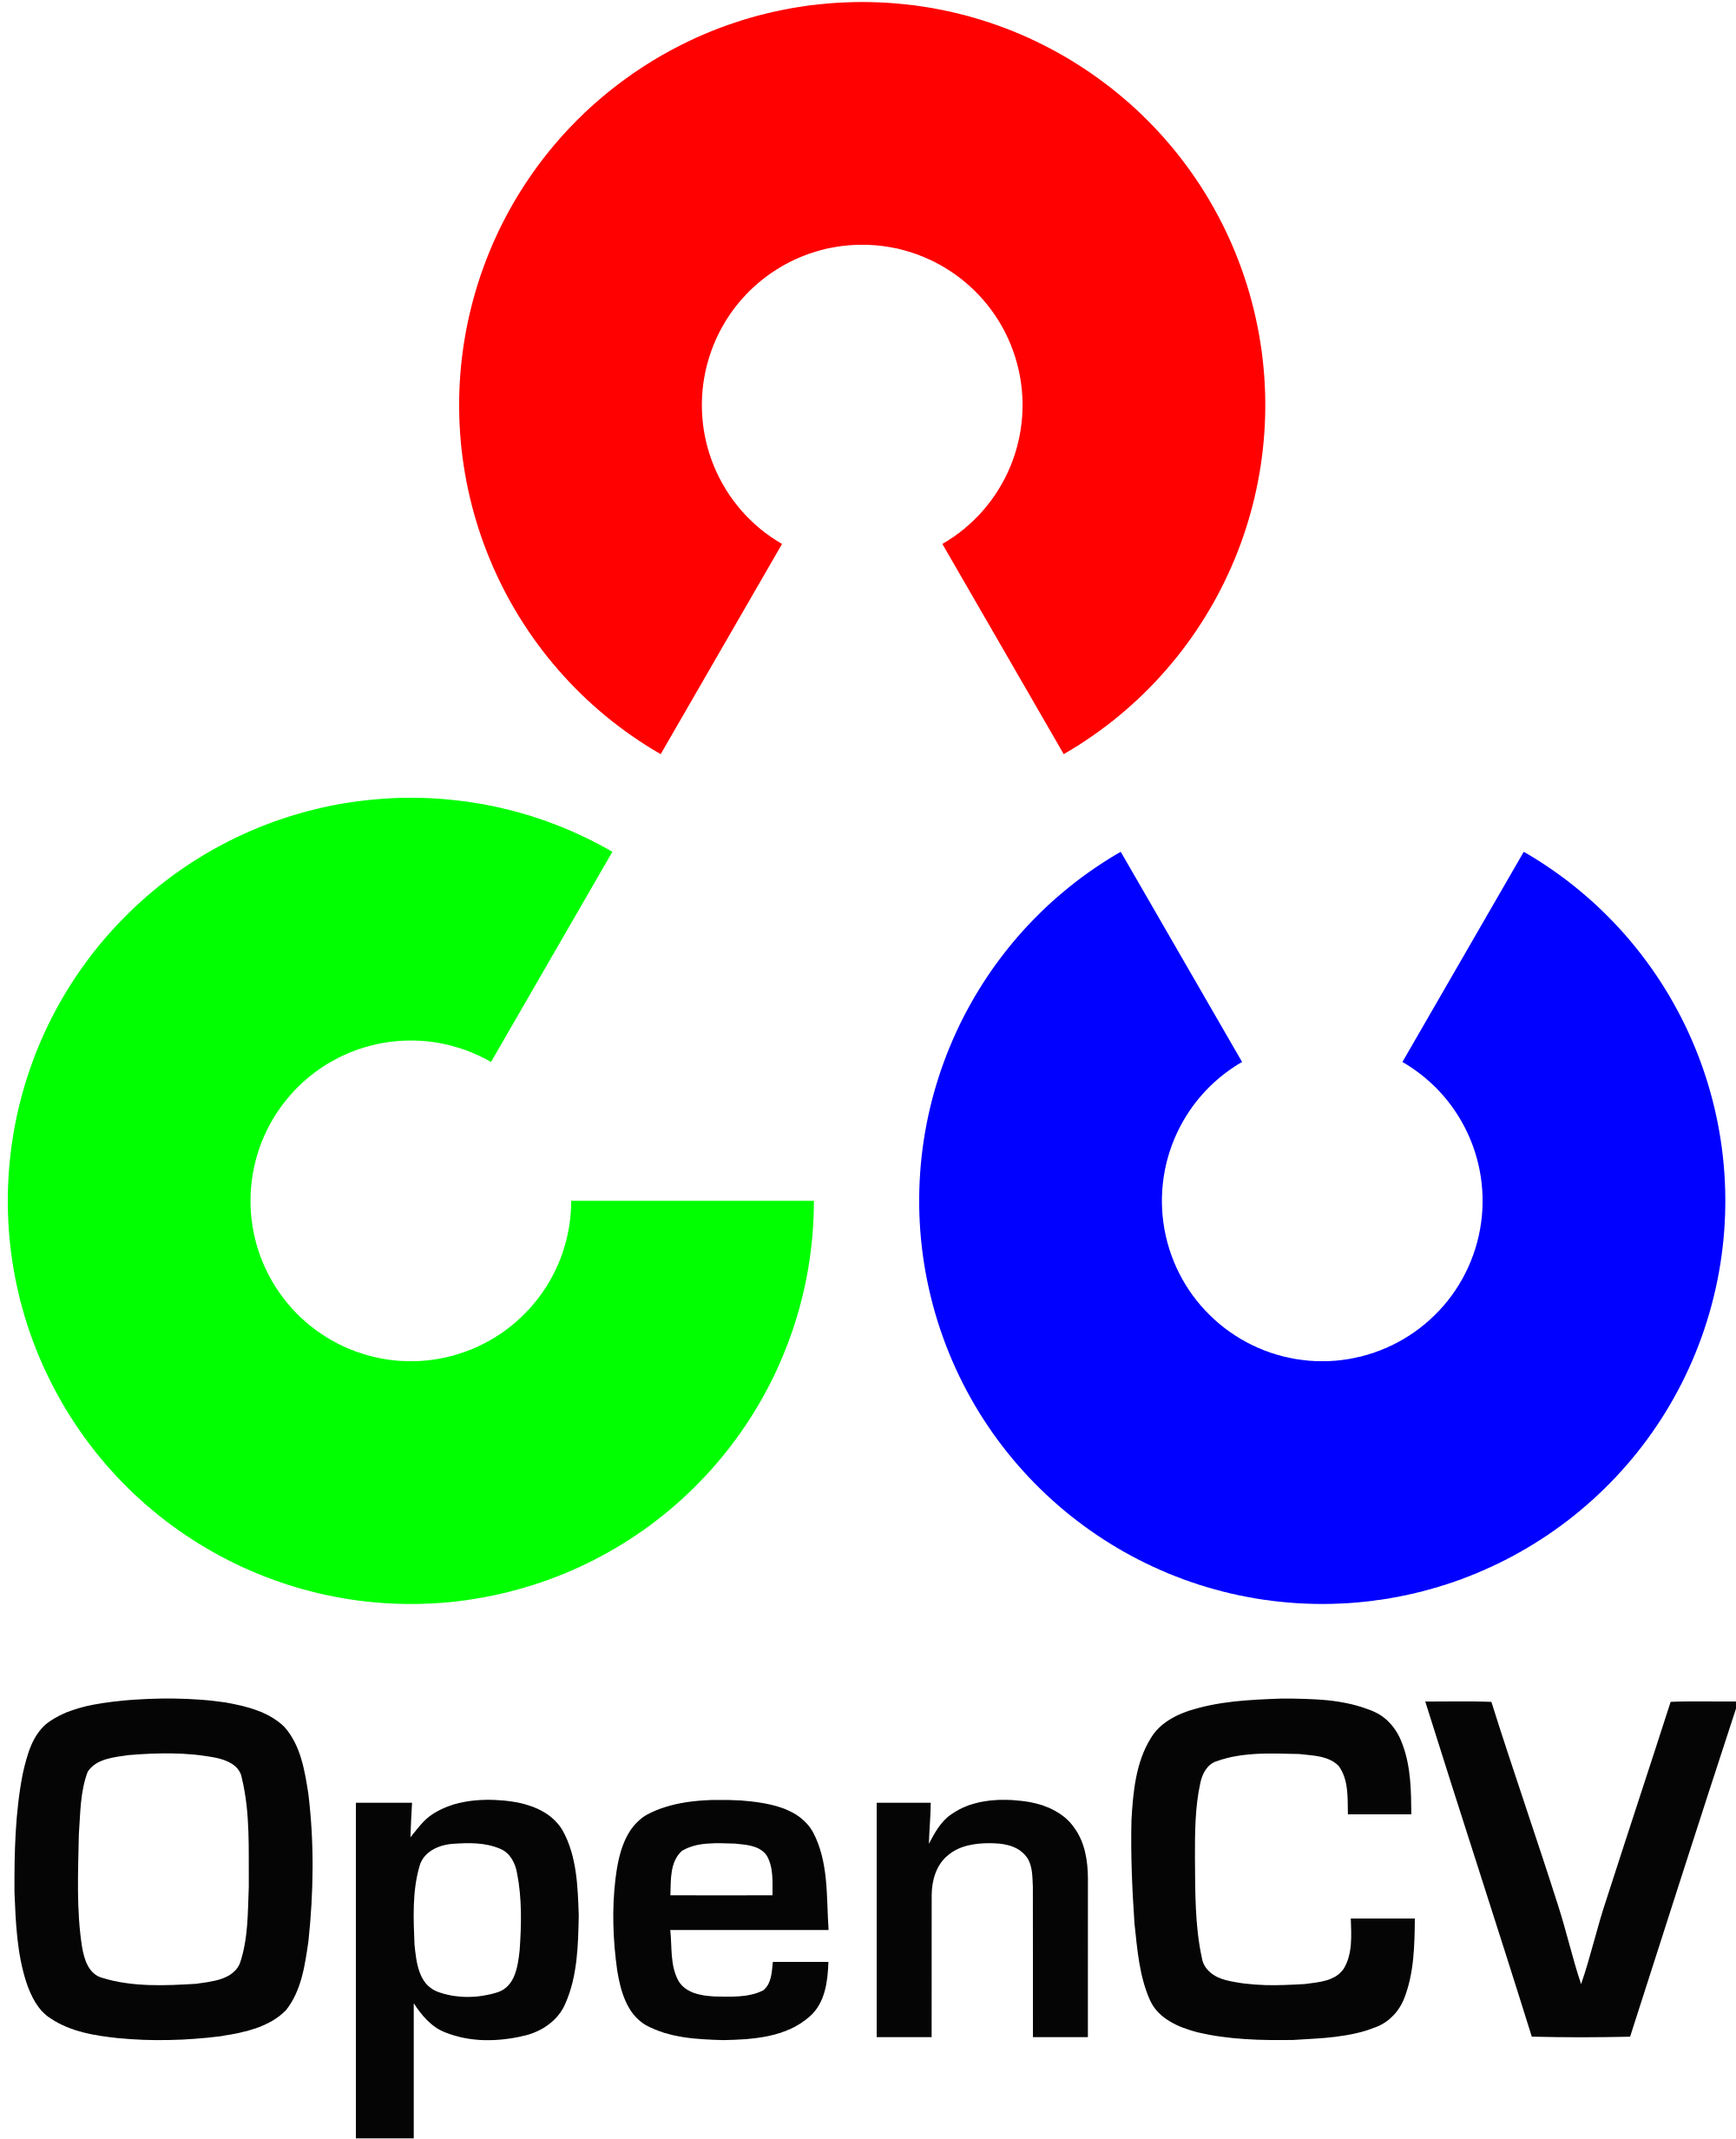 installing OpenCV 3.0 on raspberry pi b+